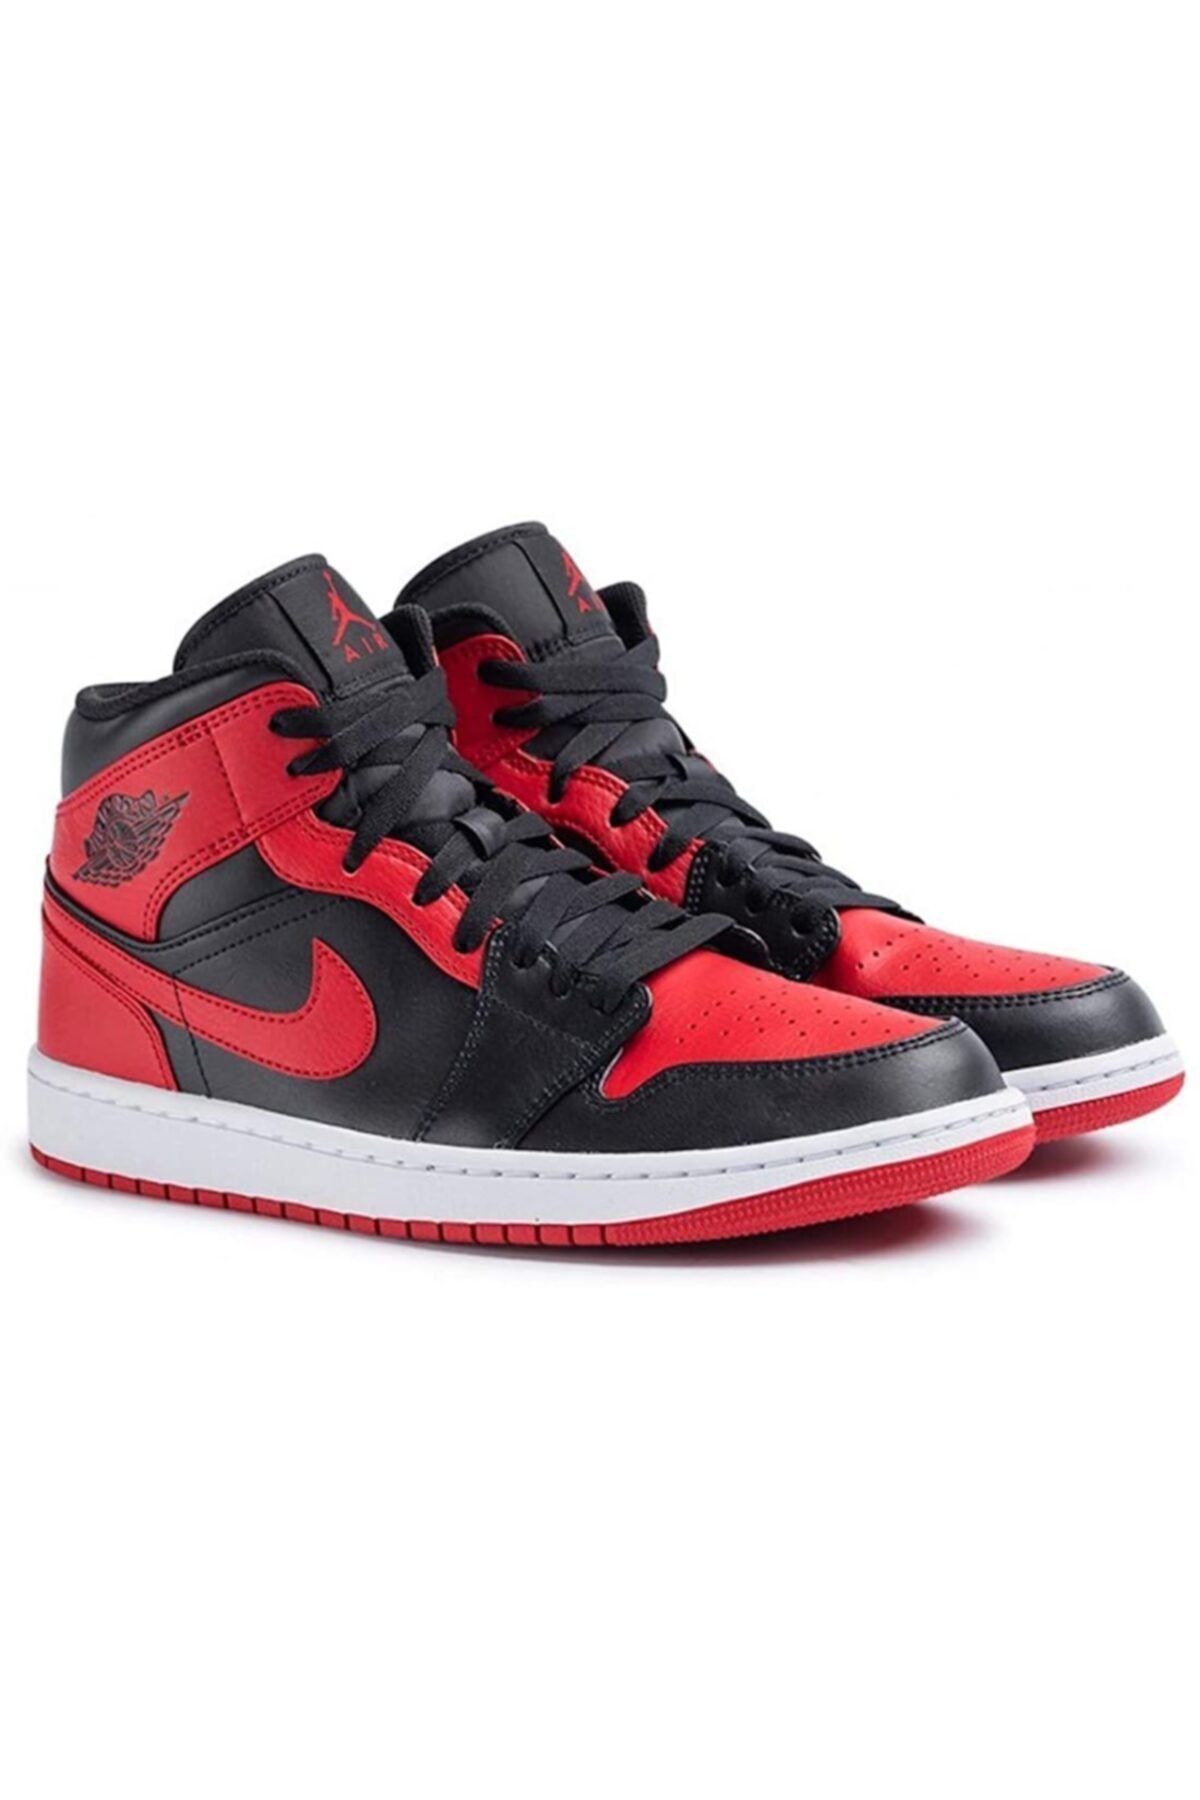 Nike Air Jordan 1 Mid 554724-074